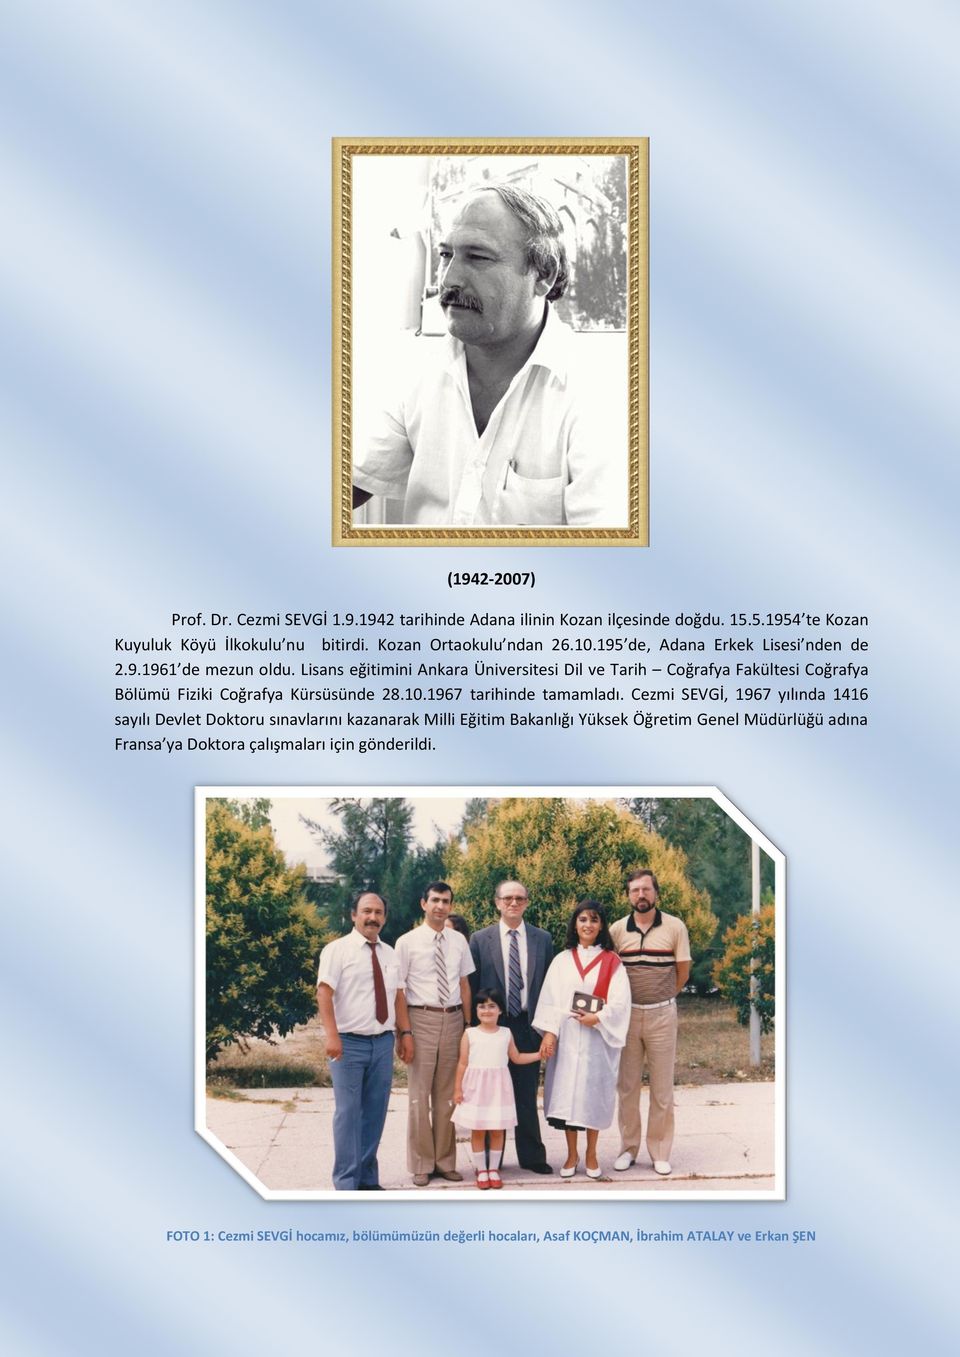 Lisans eğitimini Ankara Üniversitesi Dil ve Tarih Coğrafya Fakültesi Coğrafya Bölümü Fiziki Coğrafya Kürsüsünde 28.10.1967 tarihinde tamamladı.